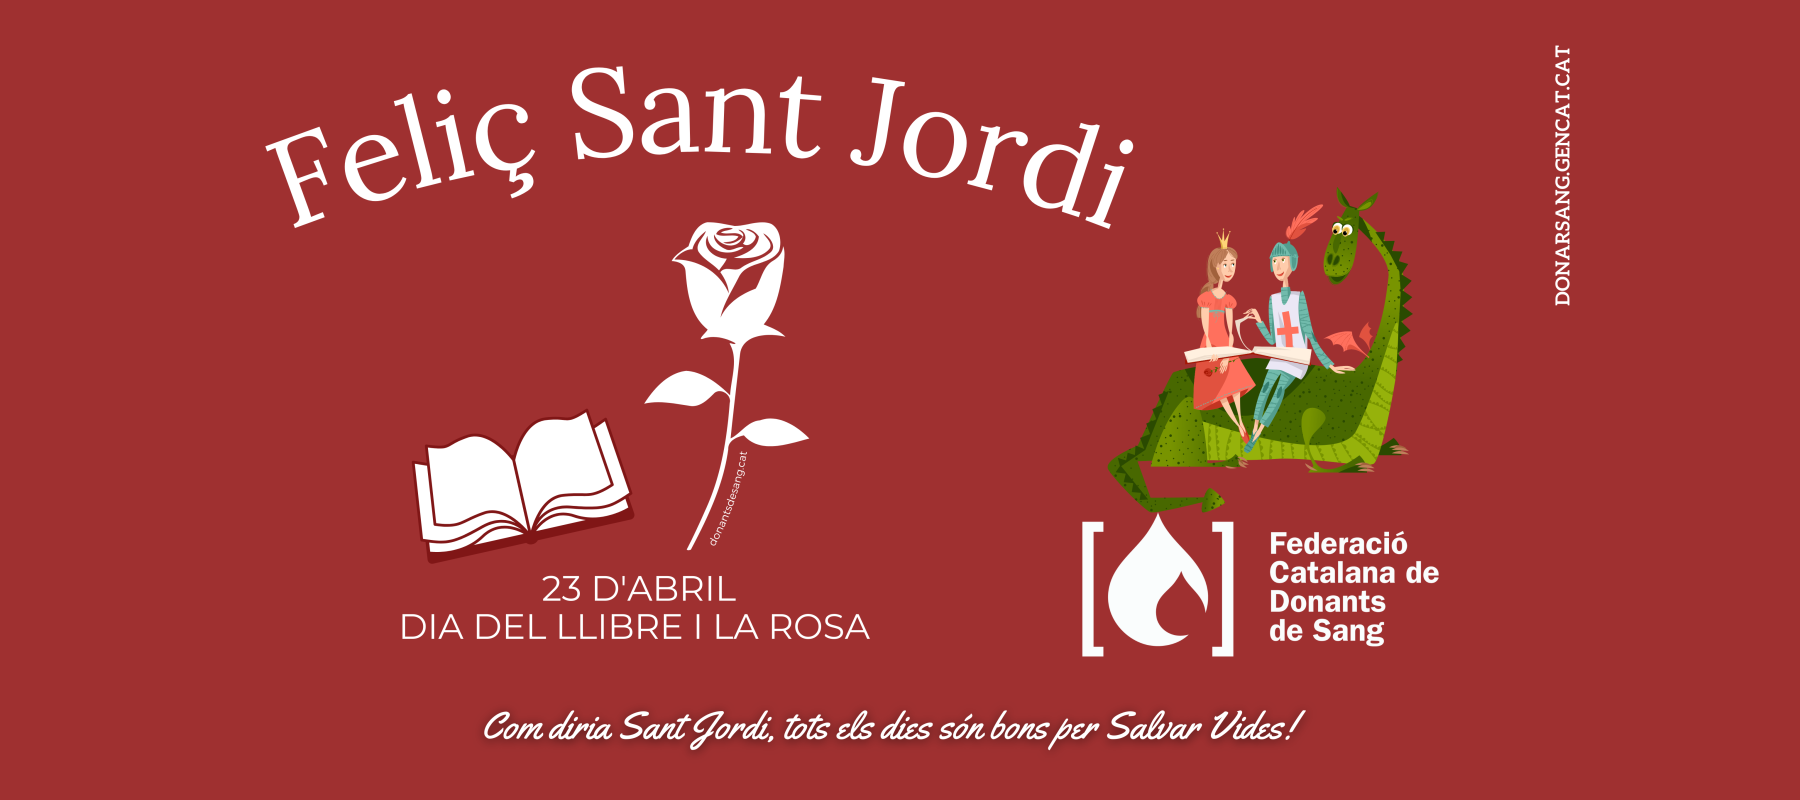 Feliç Sant Jordi! - Federació Catalana de Donants de Sang